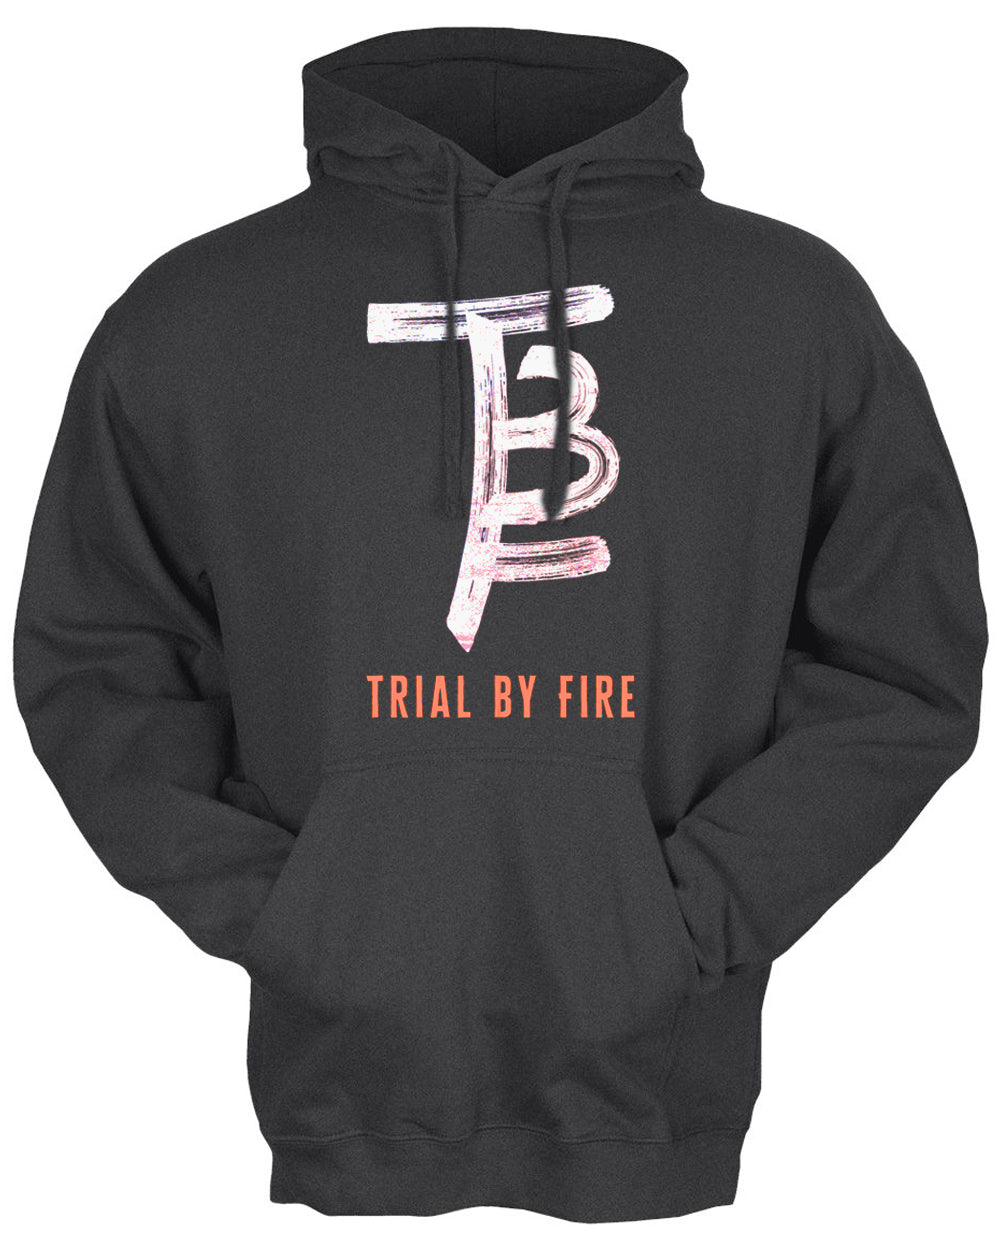 Trial By Fire Hooded Sweatshirt